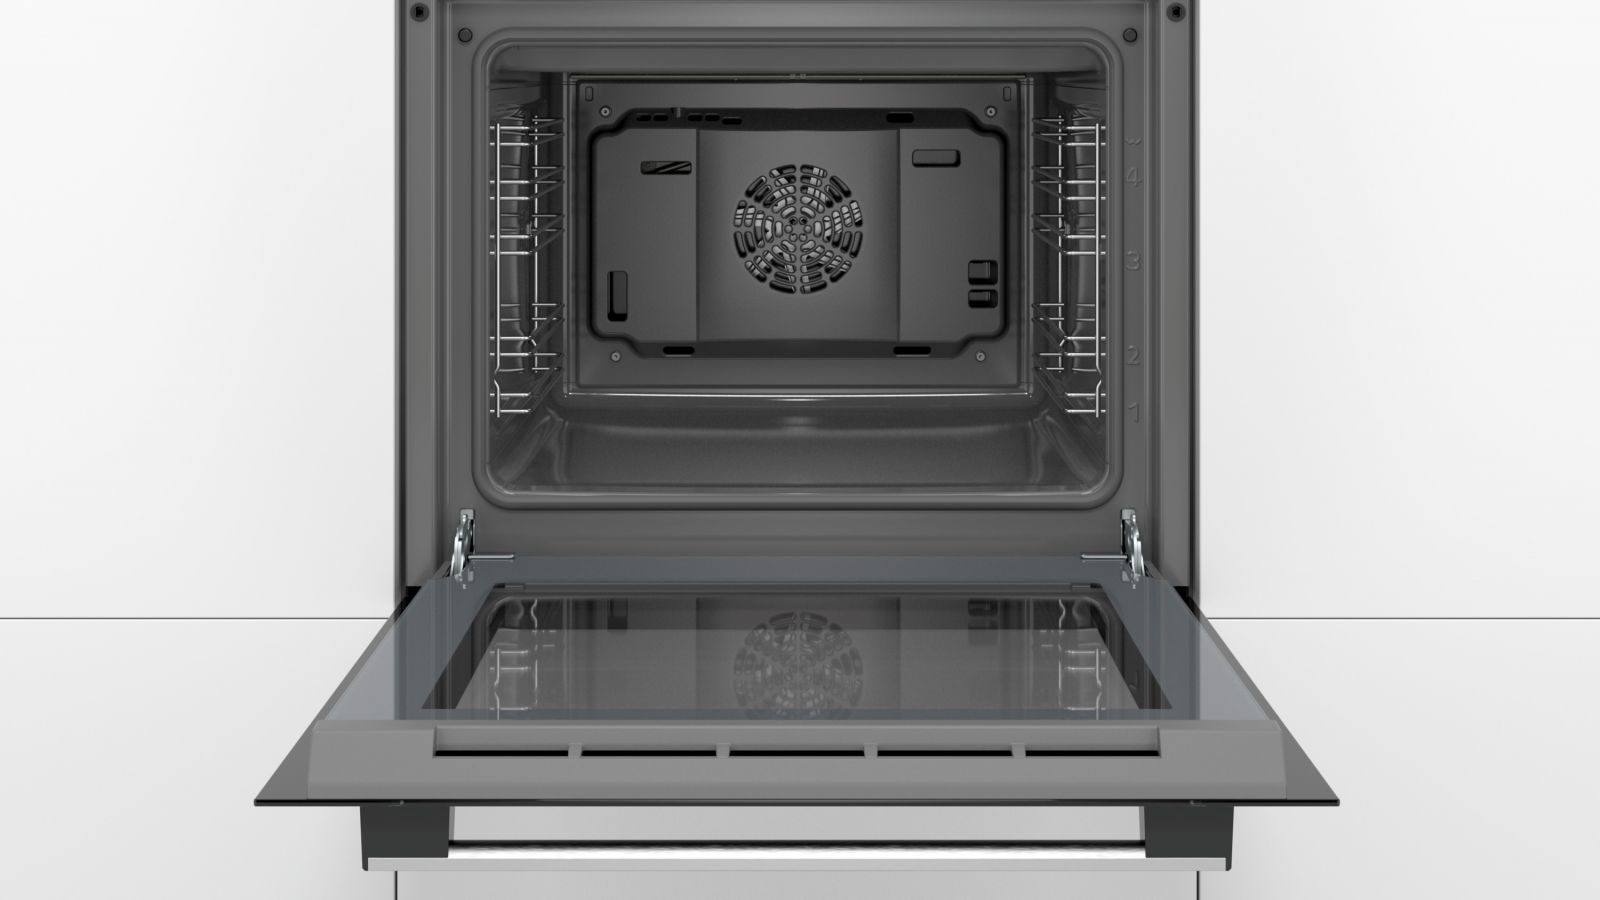 Lò Vi Sóng Bosch BFL523MSO vật dụng không thể thiếu trong căn bếp thượng lưu